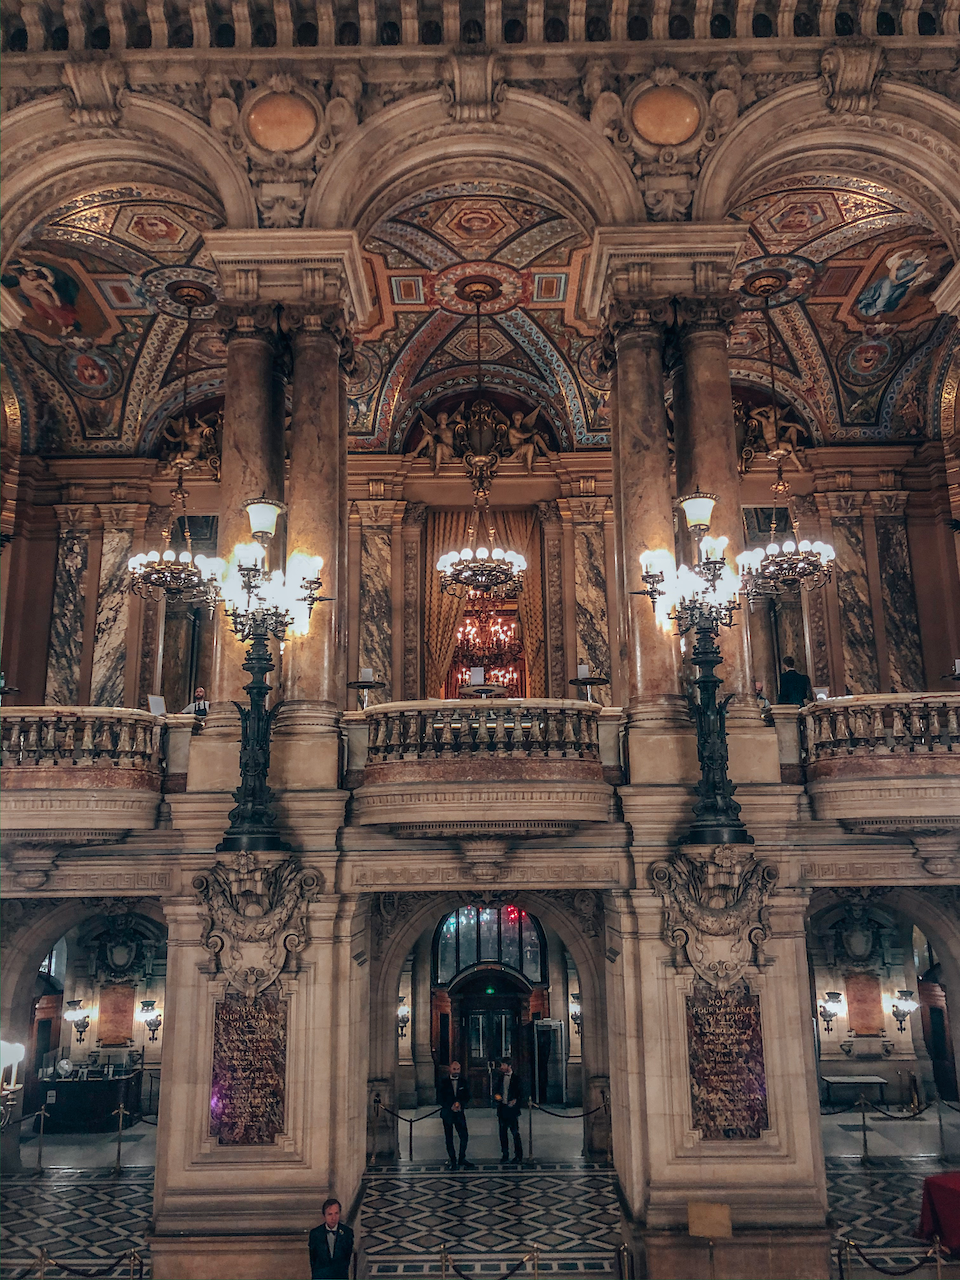 Le grand hall de l'opéra Garnier - Paris - France